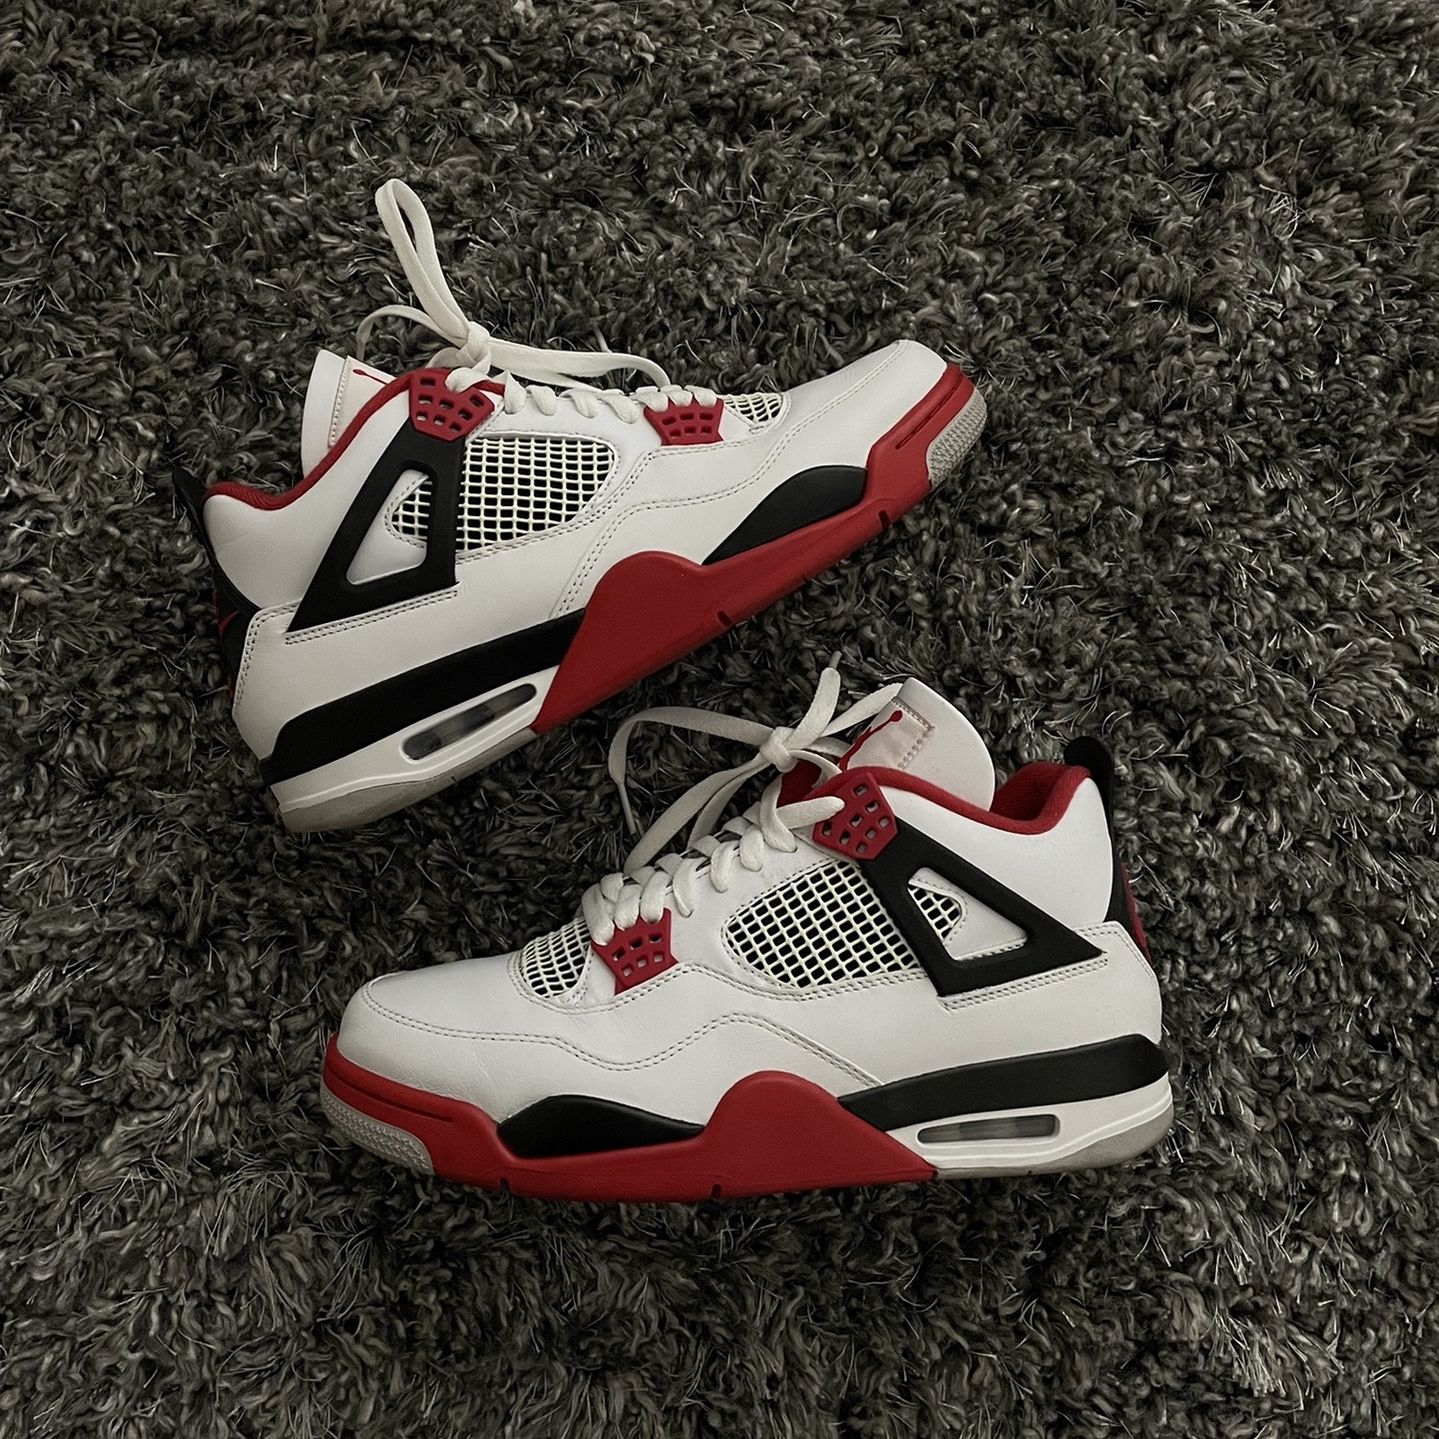 Air Jordan Retro OG “Fire Red” 2020